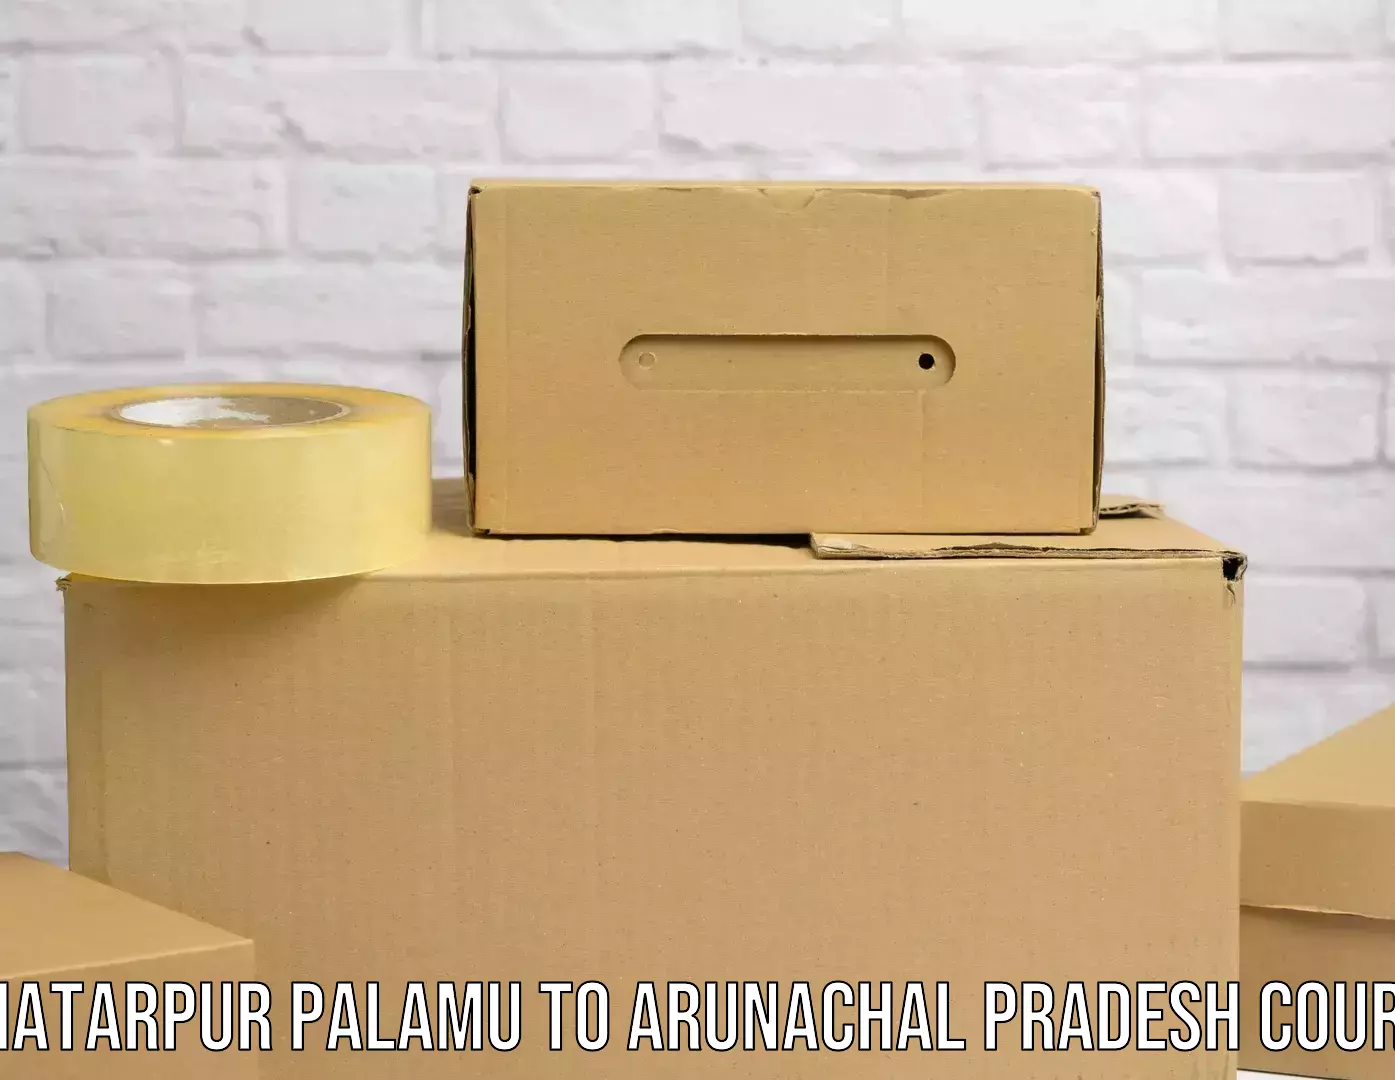 Fragile item shipping Chhatarpur Palamu to Arunachal Pradesh